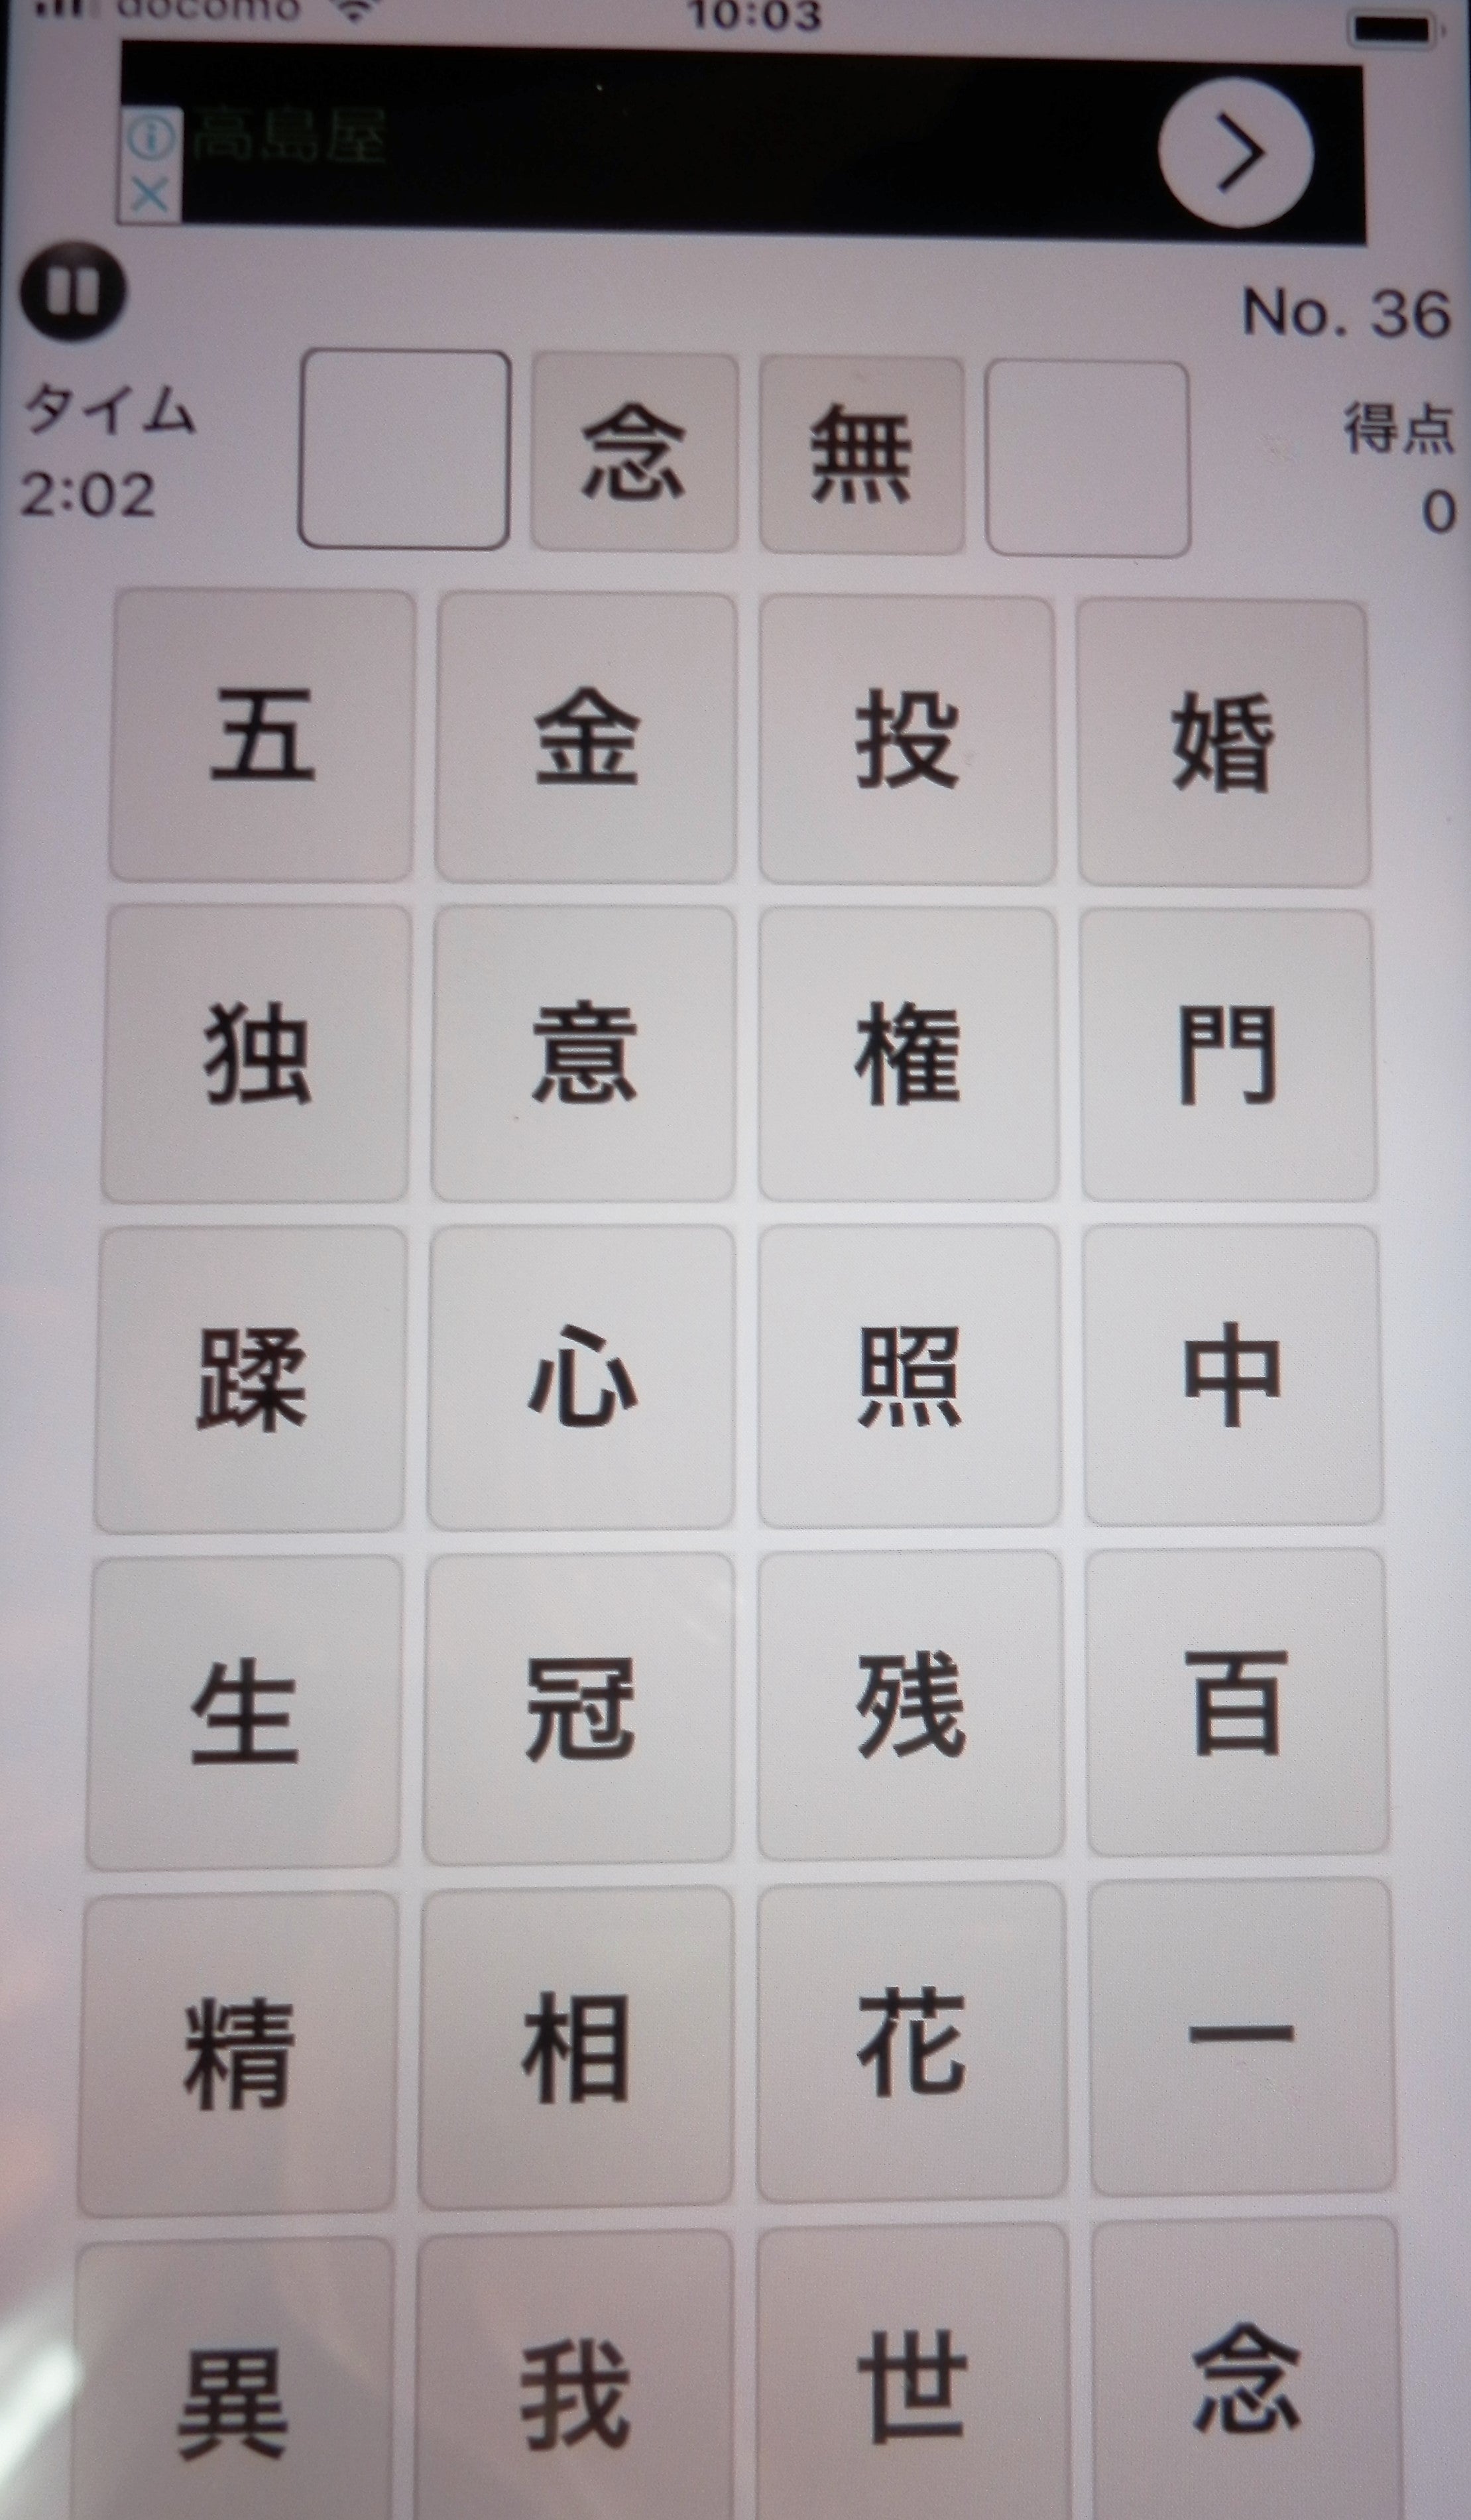 四字熟語 Idioms Of 4 Kanji Letters文字 Makoto Nagatomoのブログ